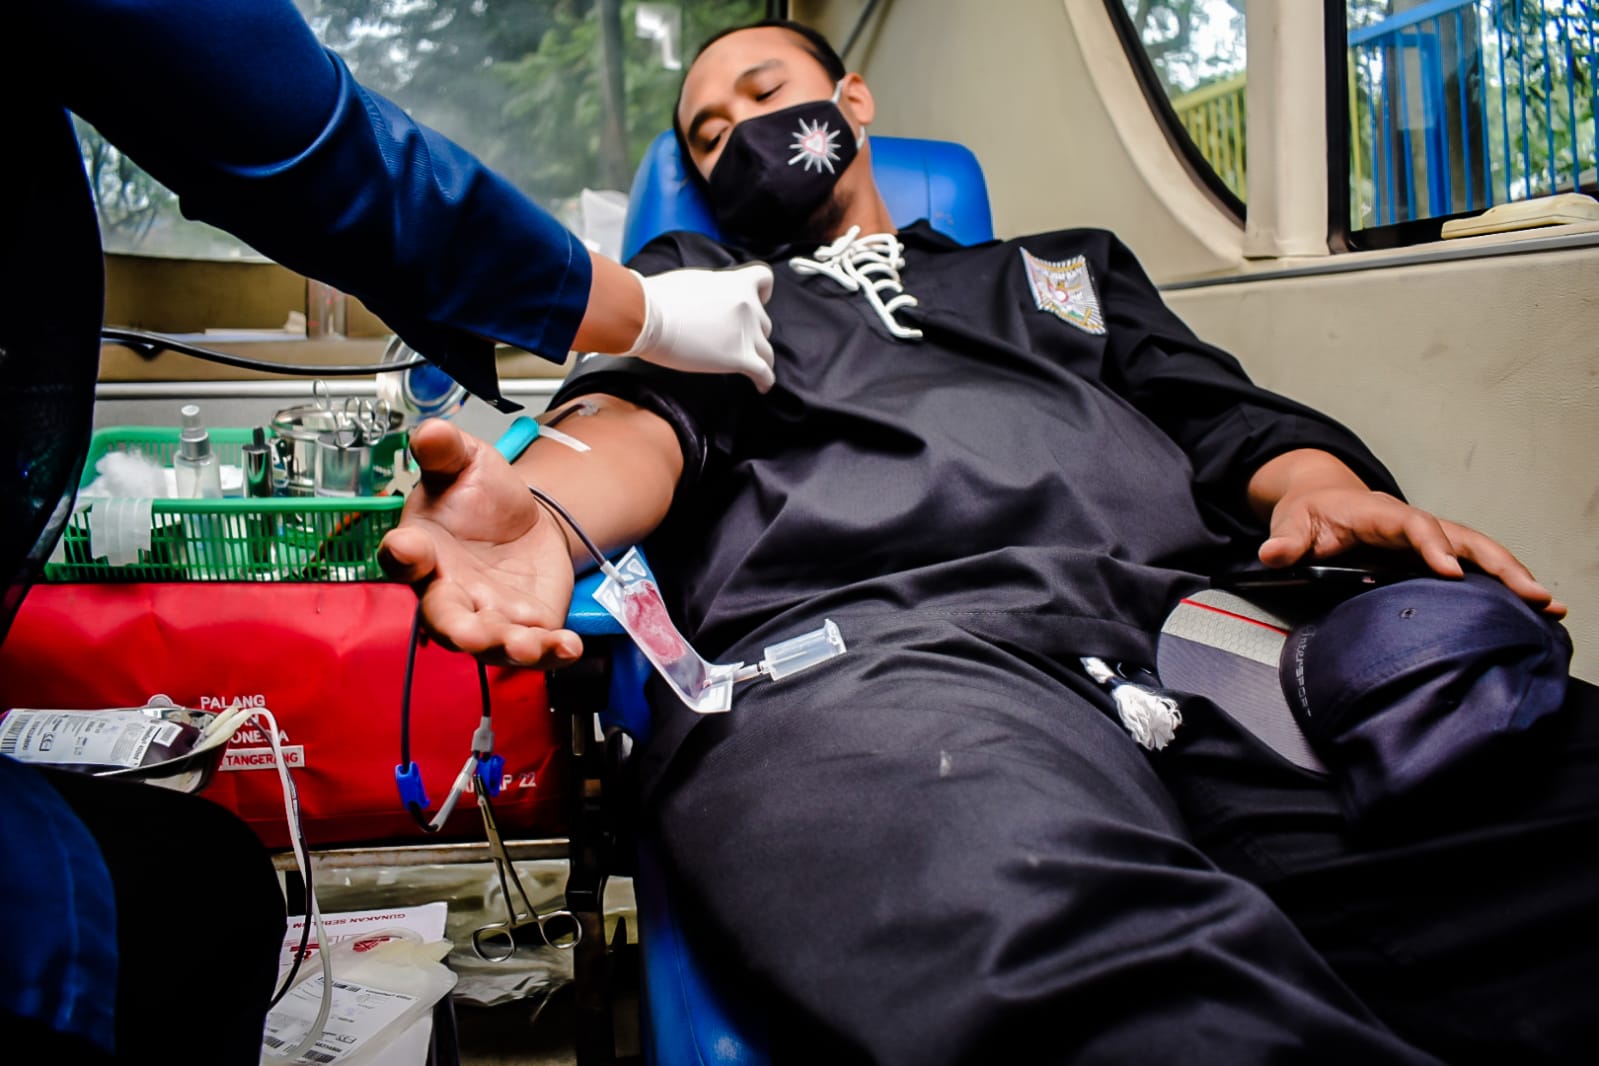 permudah-masyarakat-donor-darah-pmi-kota-tangerang-luncurkan-aplikasi